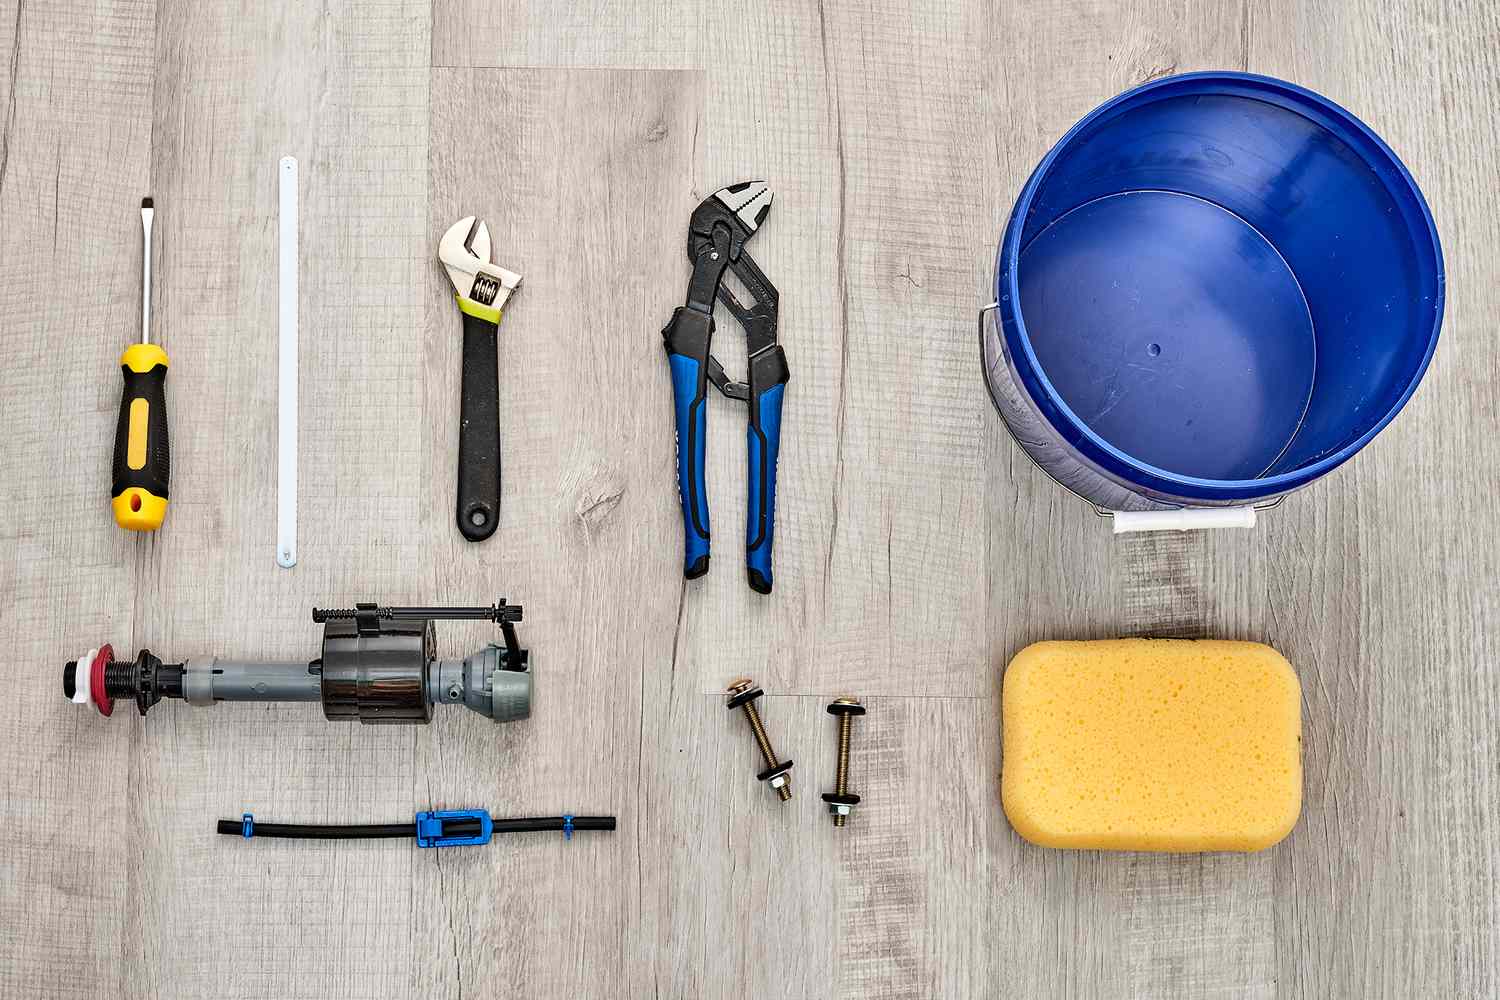 Materiales y herramientas para sustituir la válvula de descarga de un inodoro